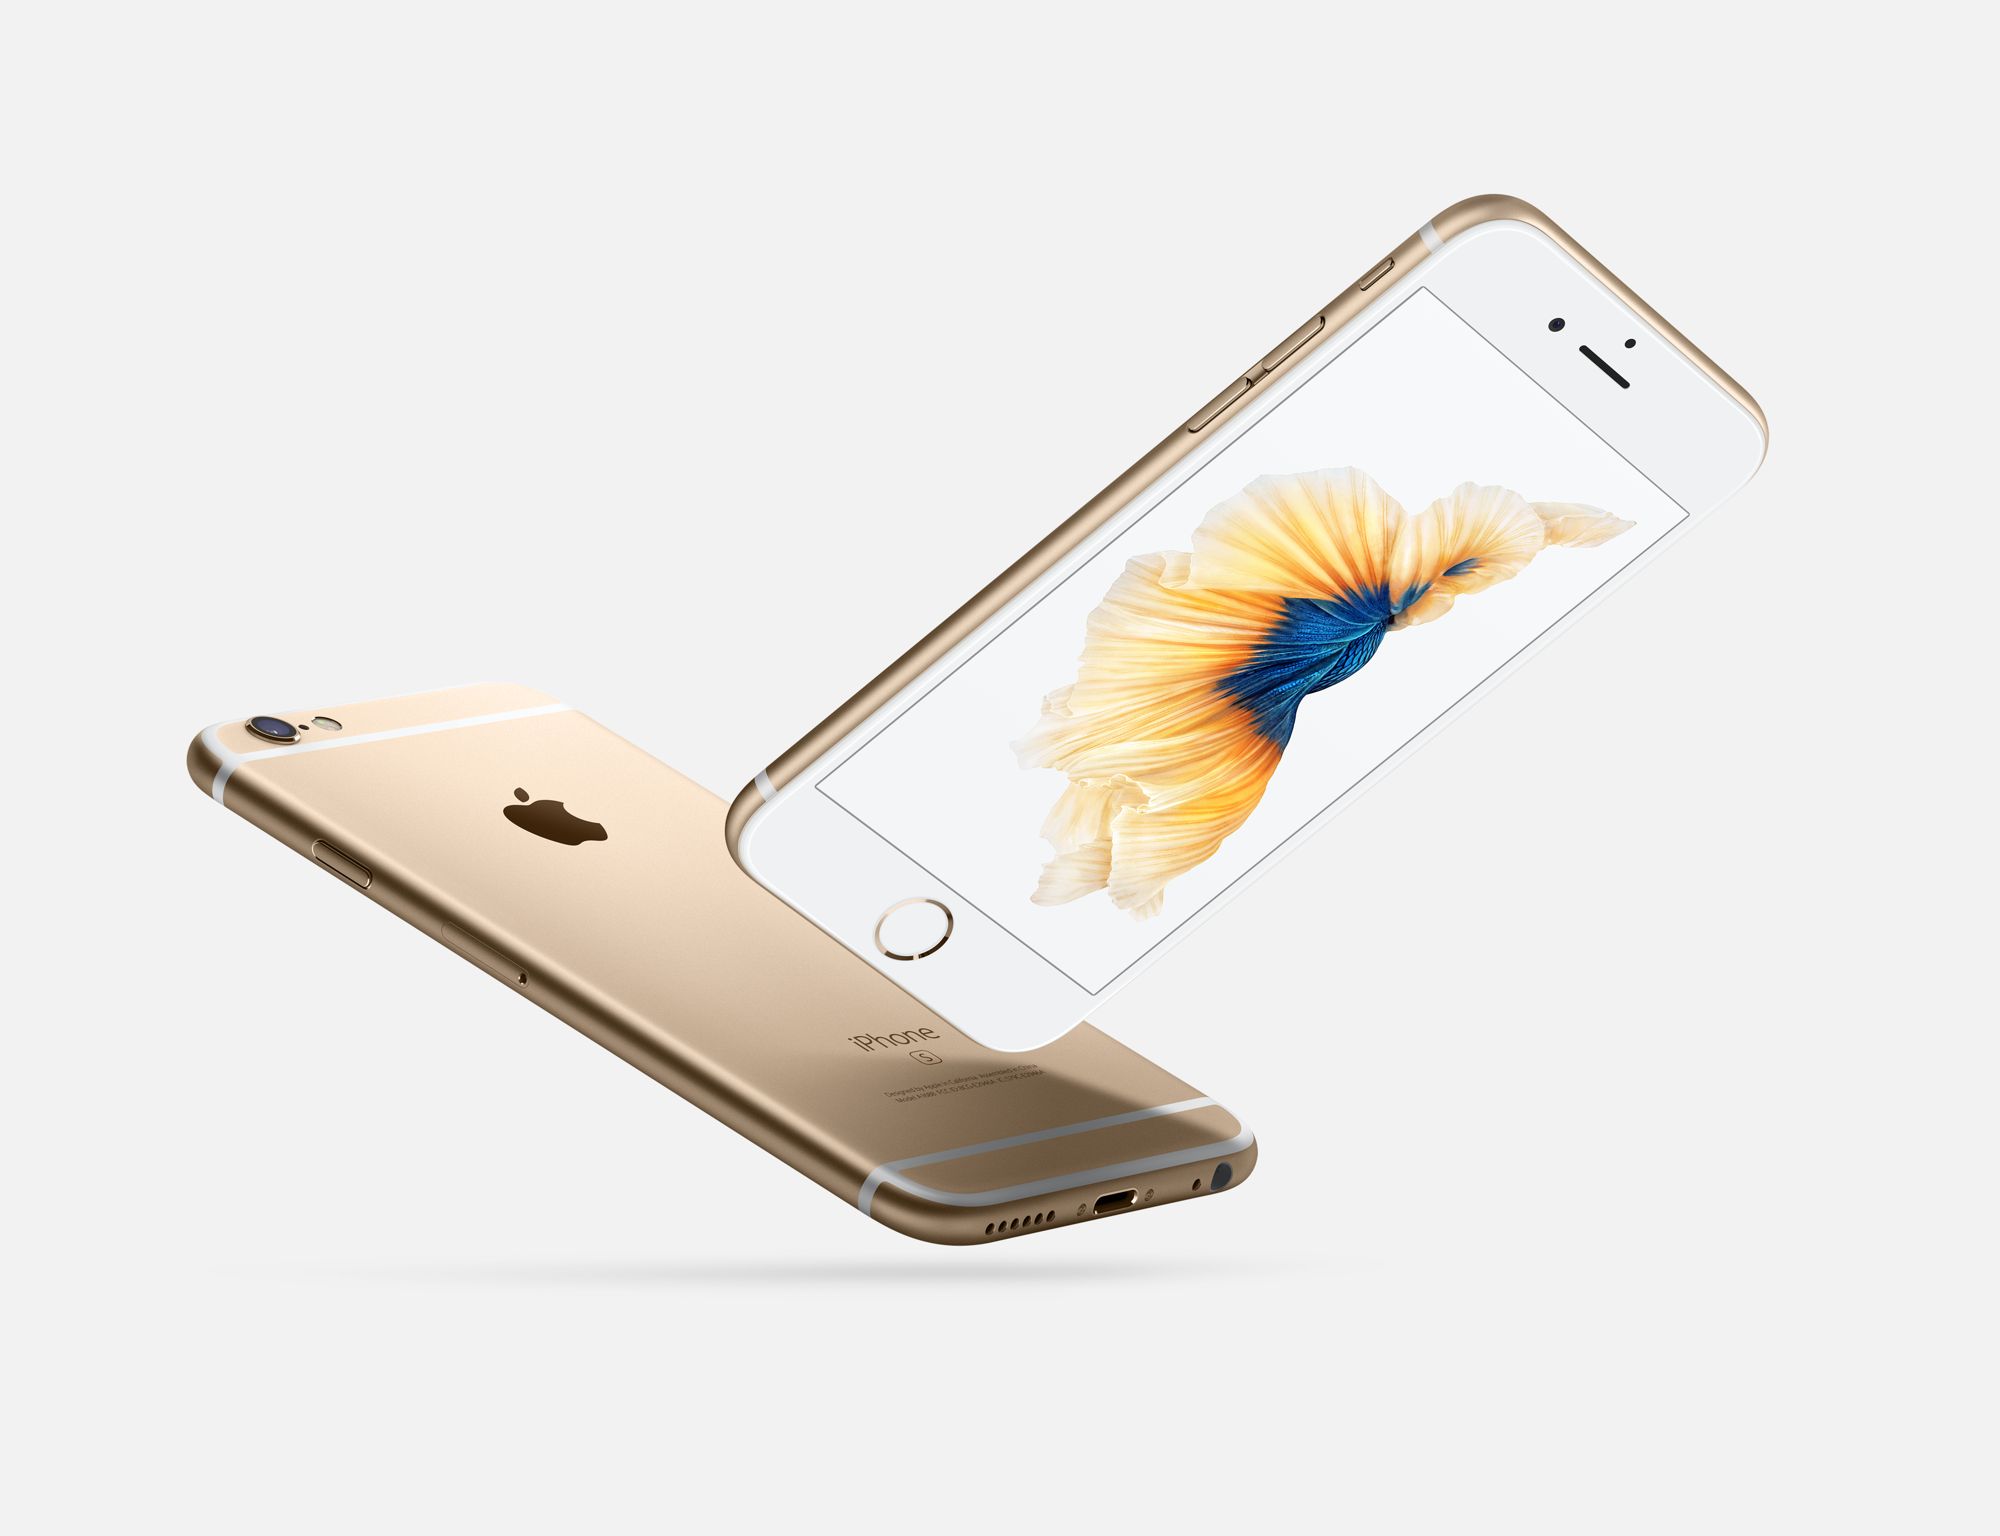 Immagine pubblicata in relazione al seguente contenuto: Apple potrebbe lanciare un iPhone 7 Plus con memoria interna da 256GB | Nome immagine: news23584_Apple-iPhone-6s_4.jpg